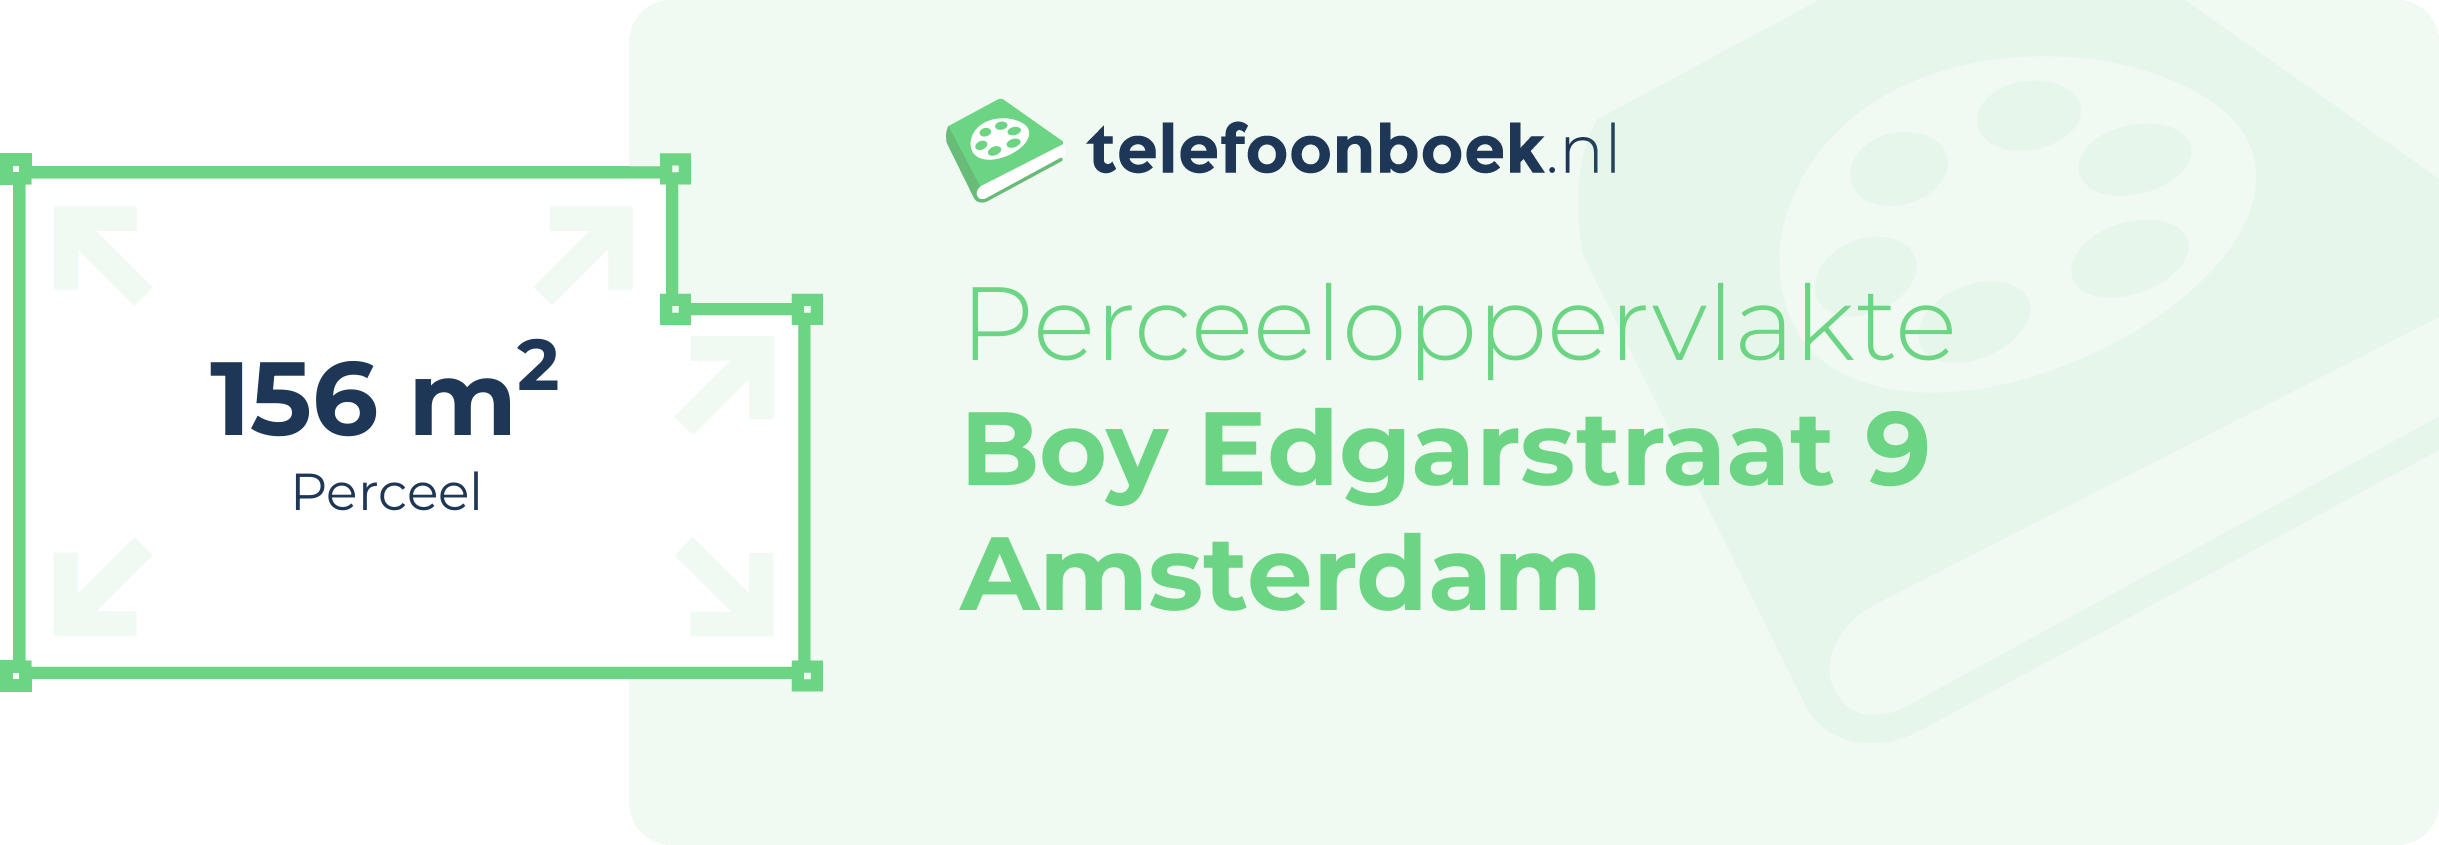 Perceeloppervlakte Boy Edgarstraat 9 Amsterdam